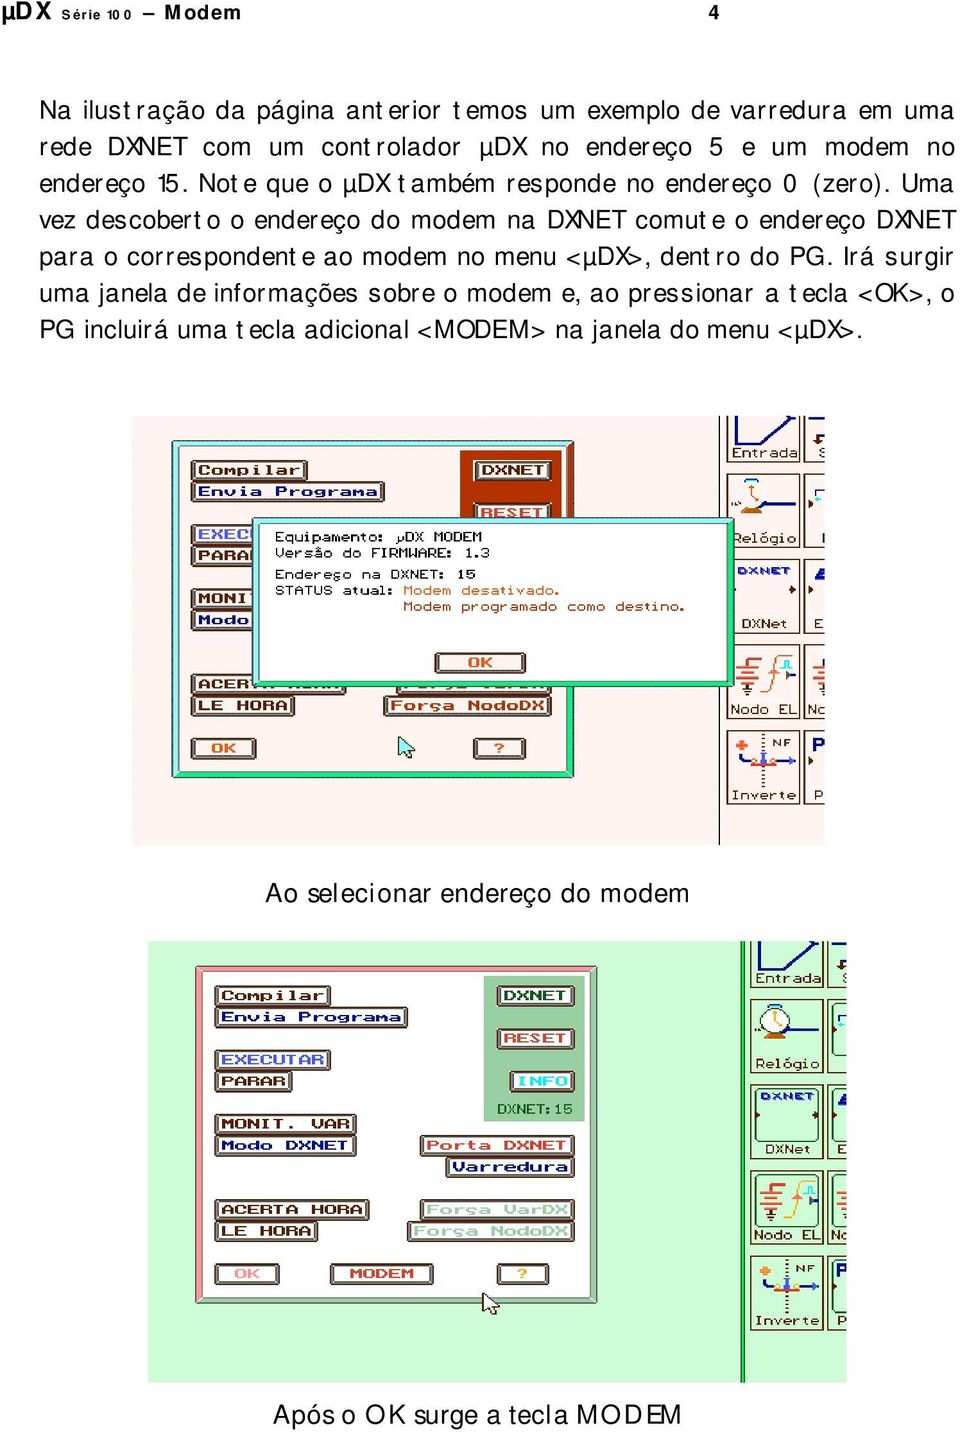 Uma vez descoberto o endereço do modem na DXNET comute o endereço DXNET para o correspondente ao modem no menu <µdx>, dentro do PG.